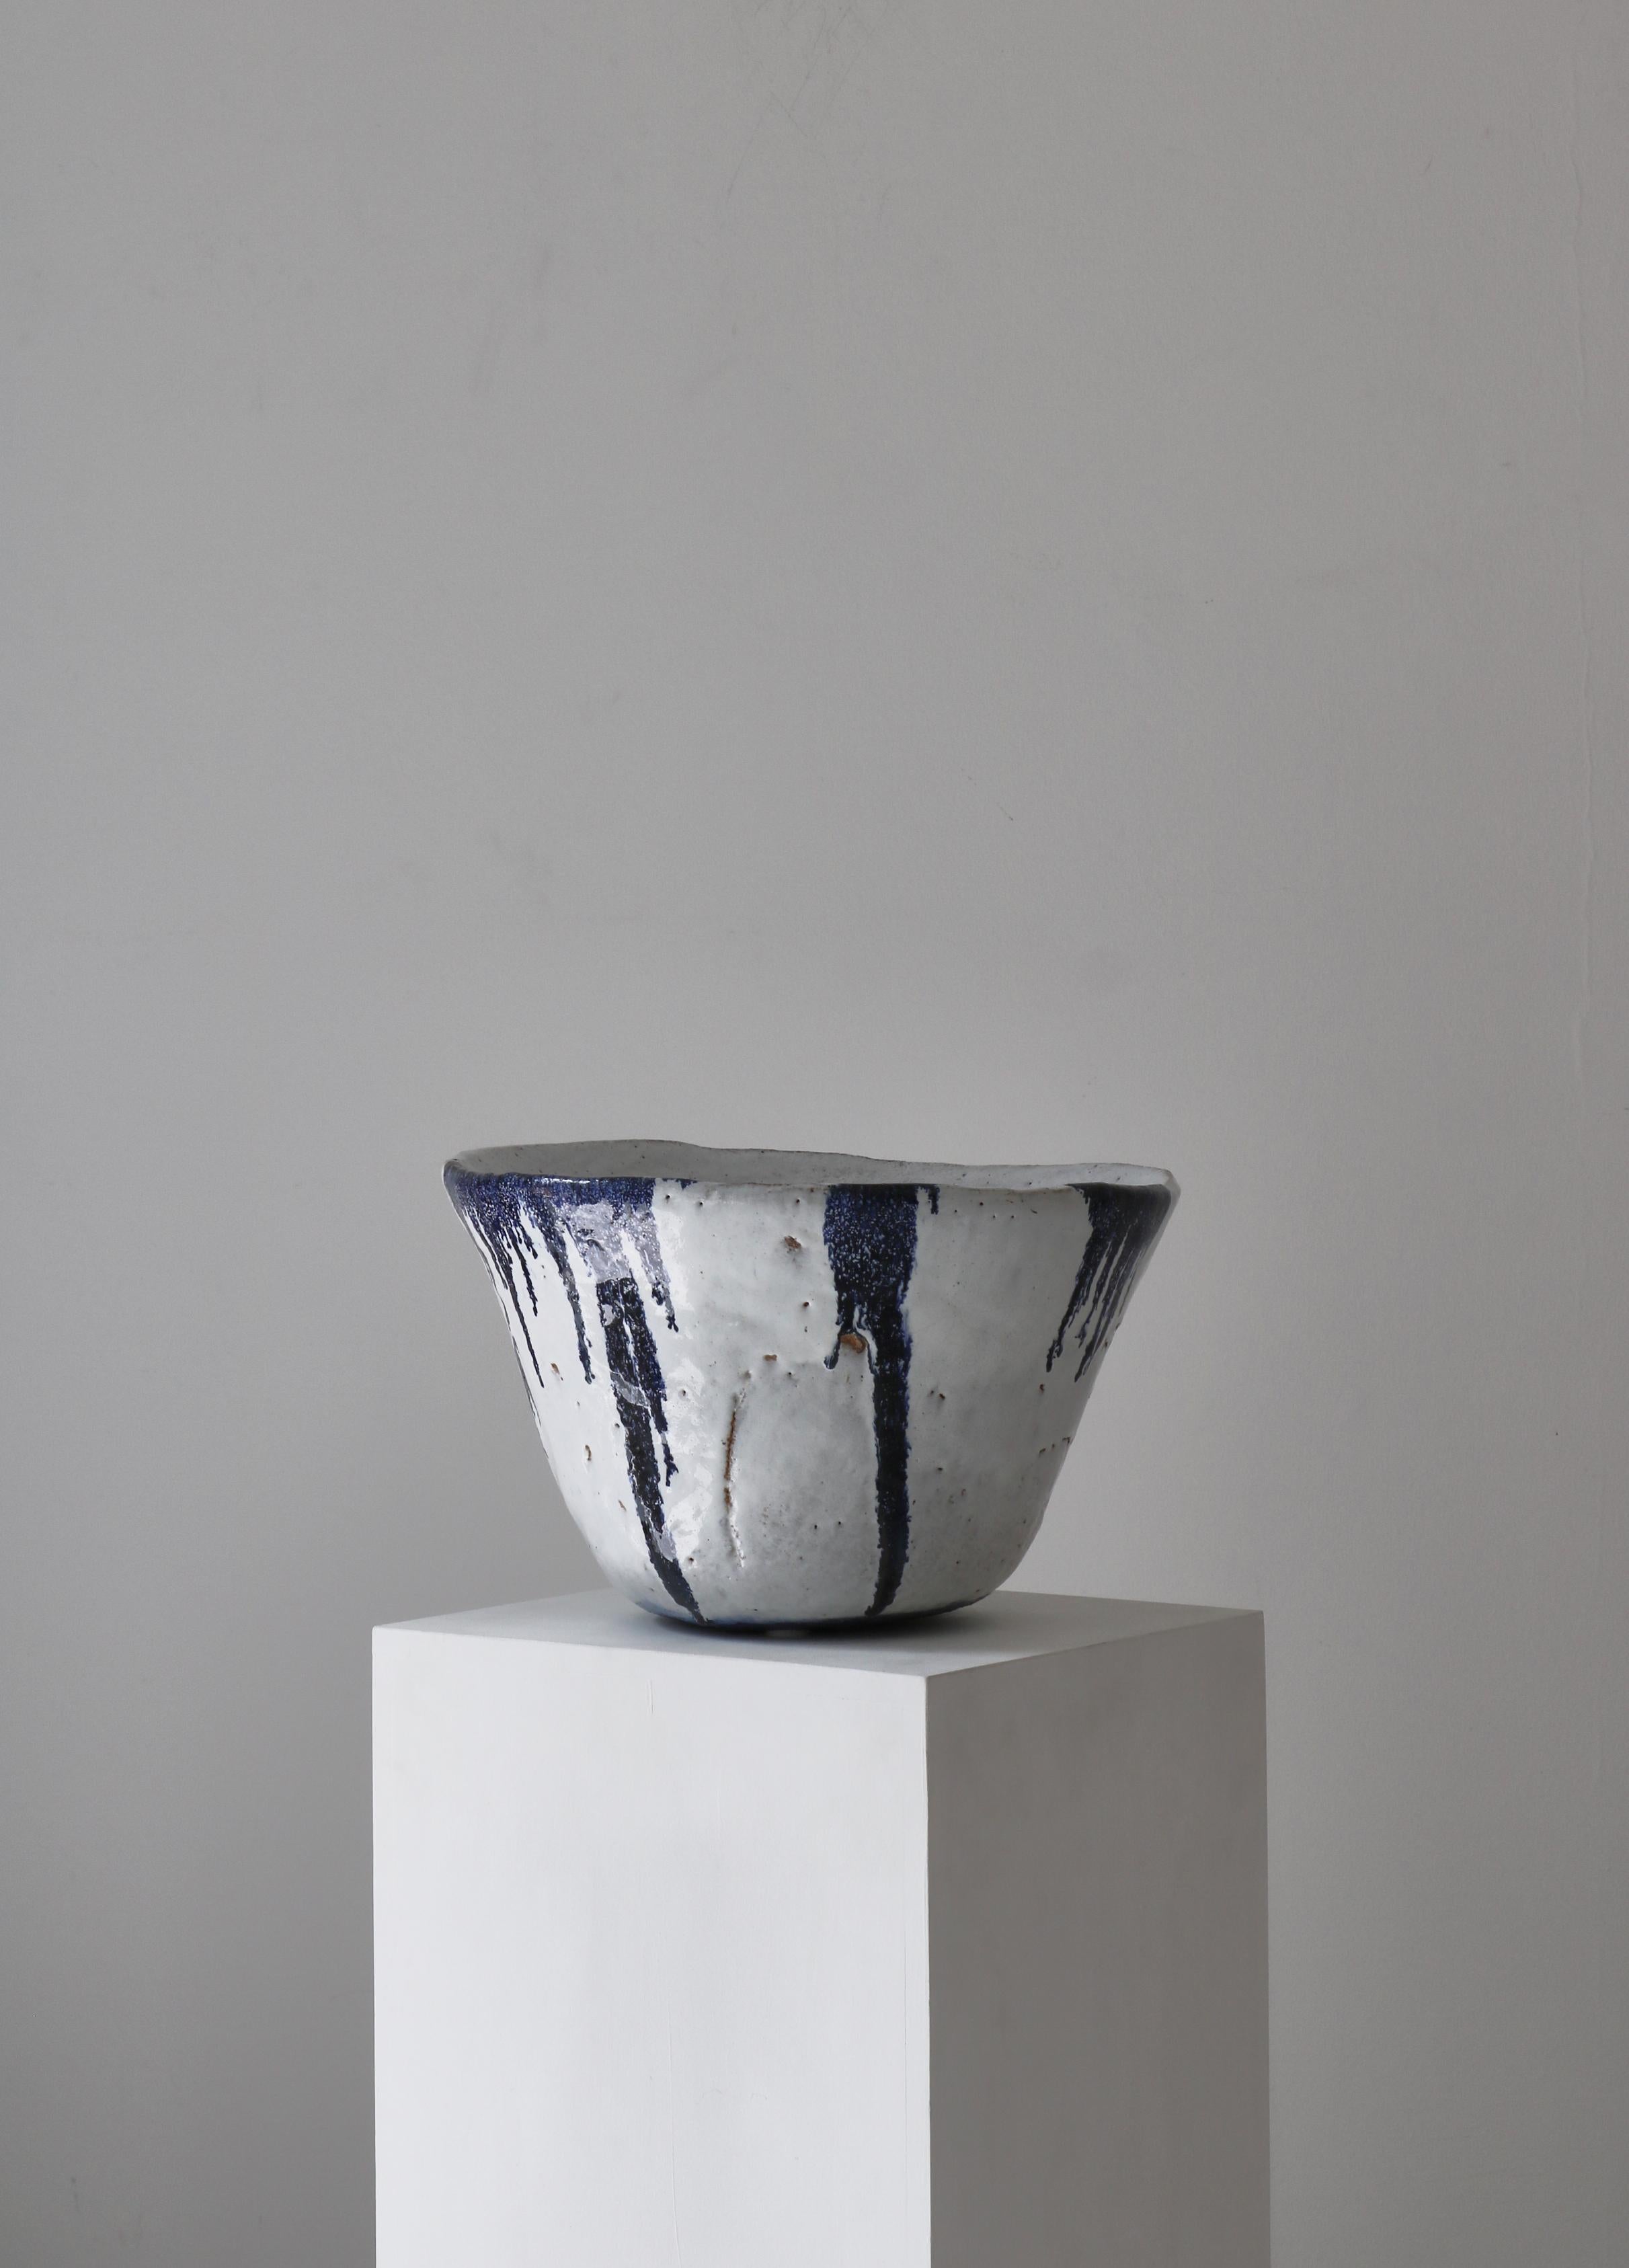 Superbe et immense bol en grès fait à la main par l'artiste danois Ole Bjørn Krüger (1922-2007). Fabriqué dans son propre atelier dans les années 1960. Magnifique forme organique et le plus beau glaçage gras en bleu profond et blanc.
Signé